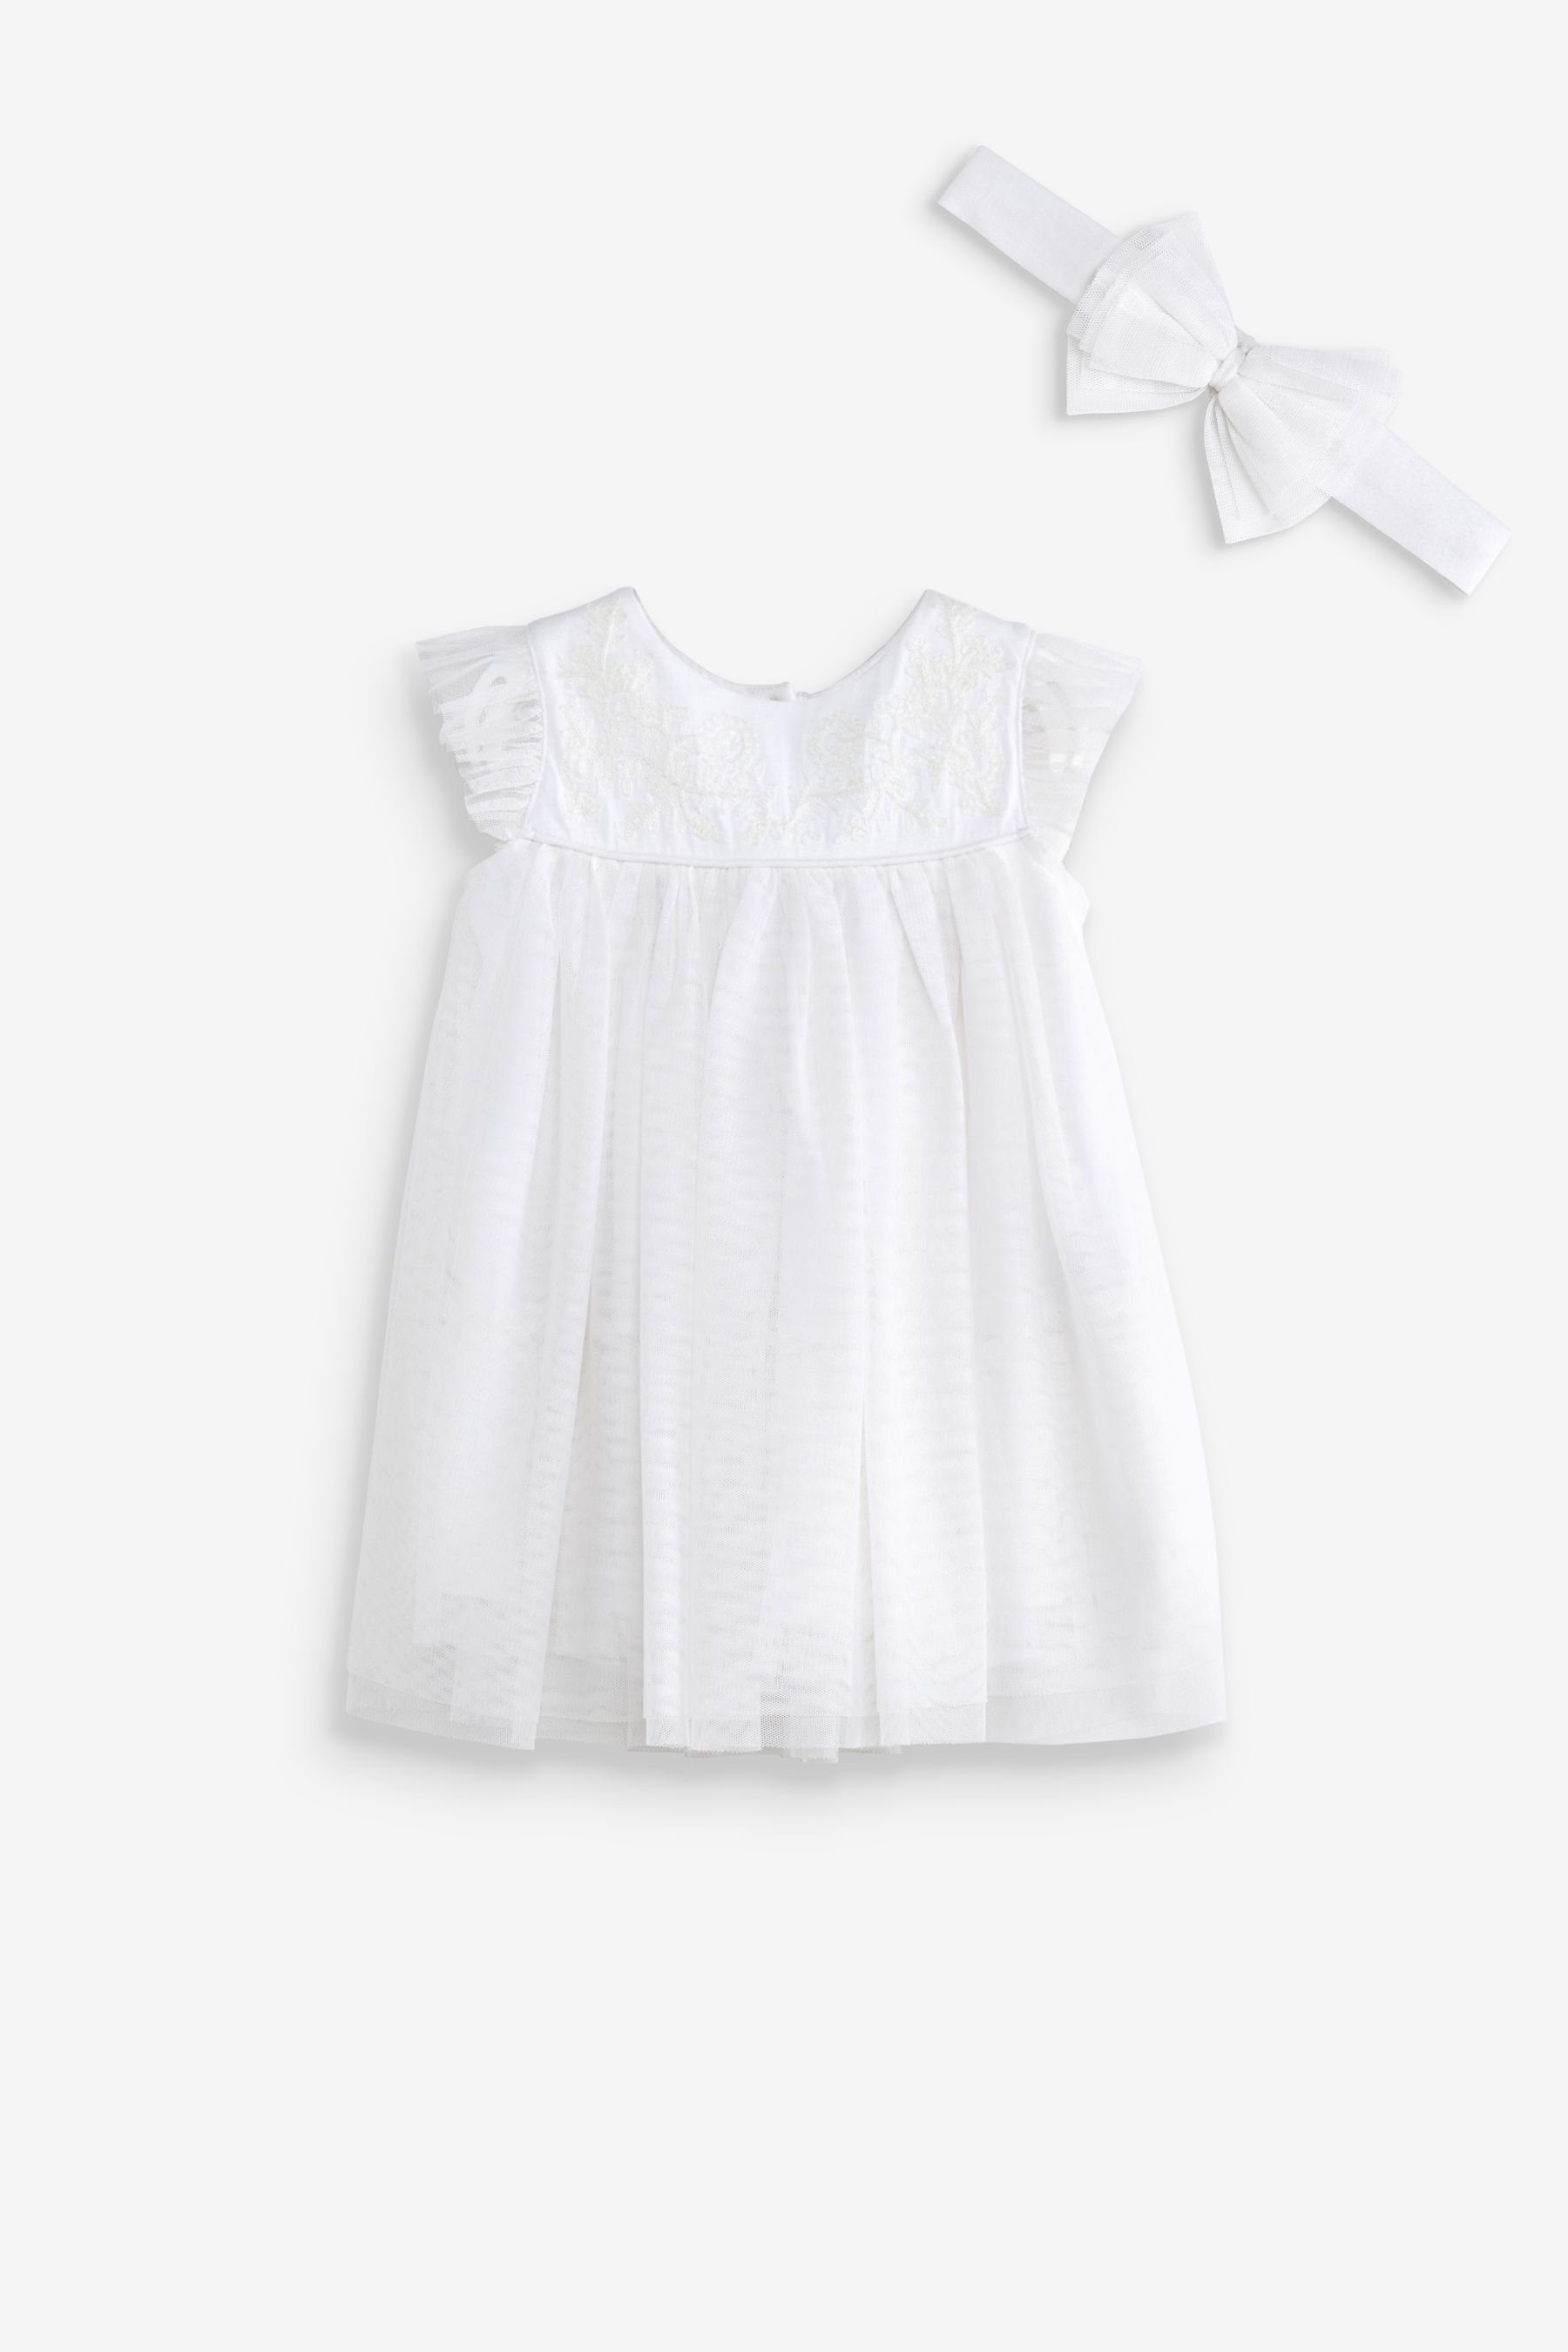 Kleid (2-tlg) Anlässe für Next Baby Partykleid besondere